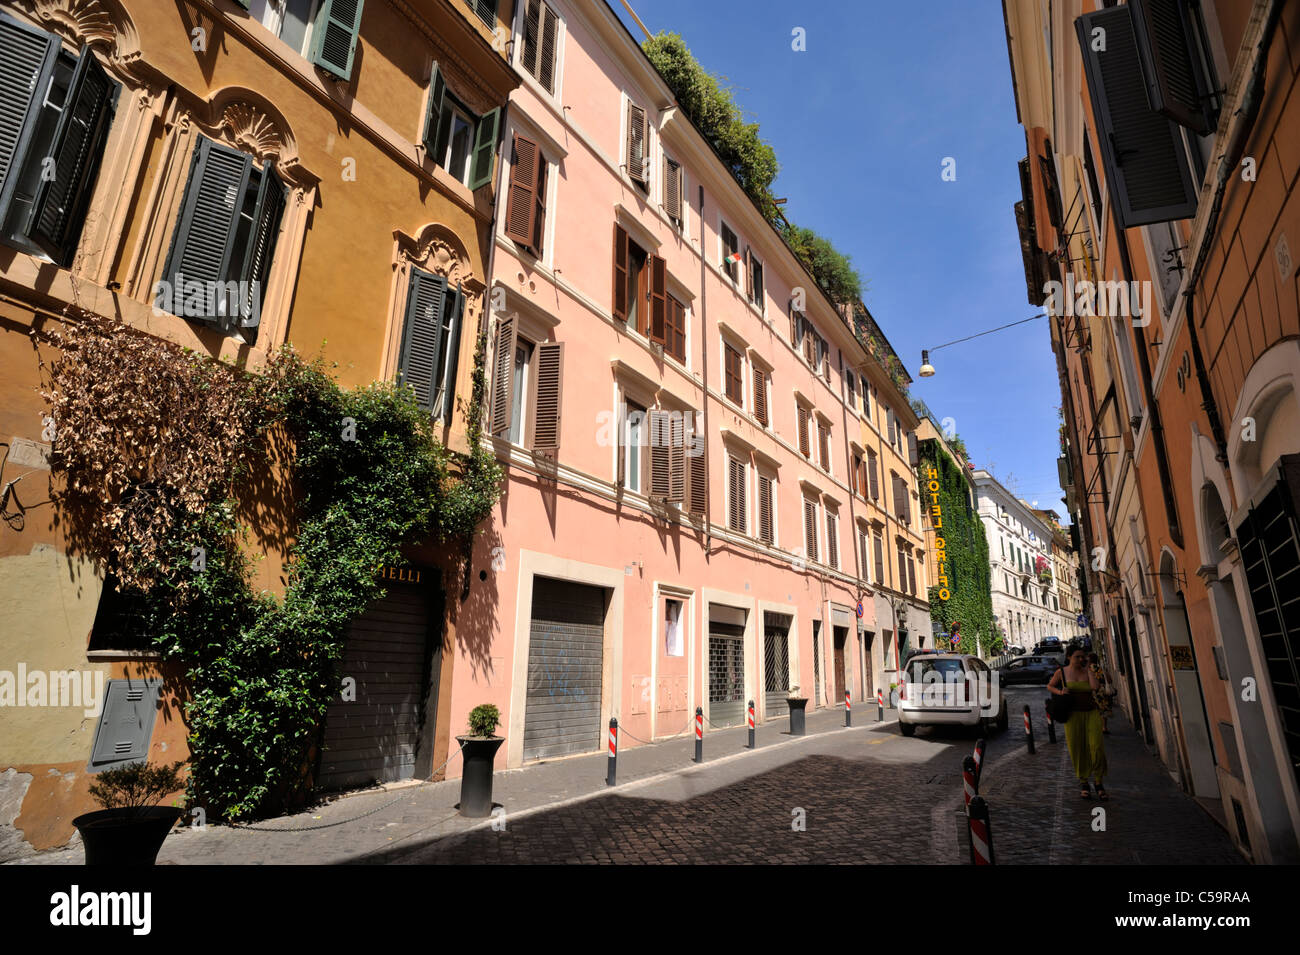 Italie, Rome, Monti neighbuorhood, via del Boschetto Banque D'Images